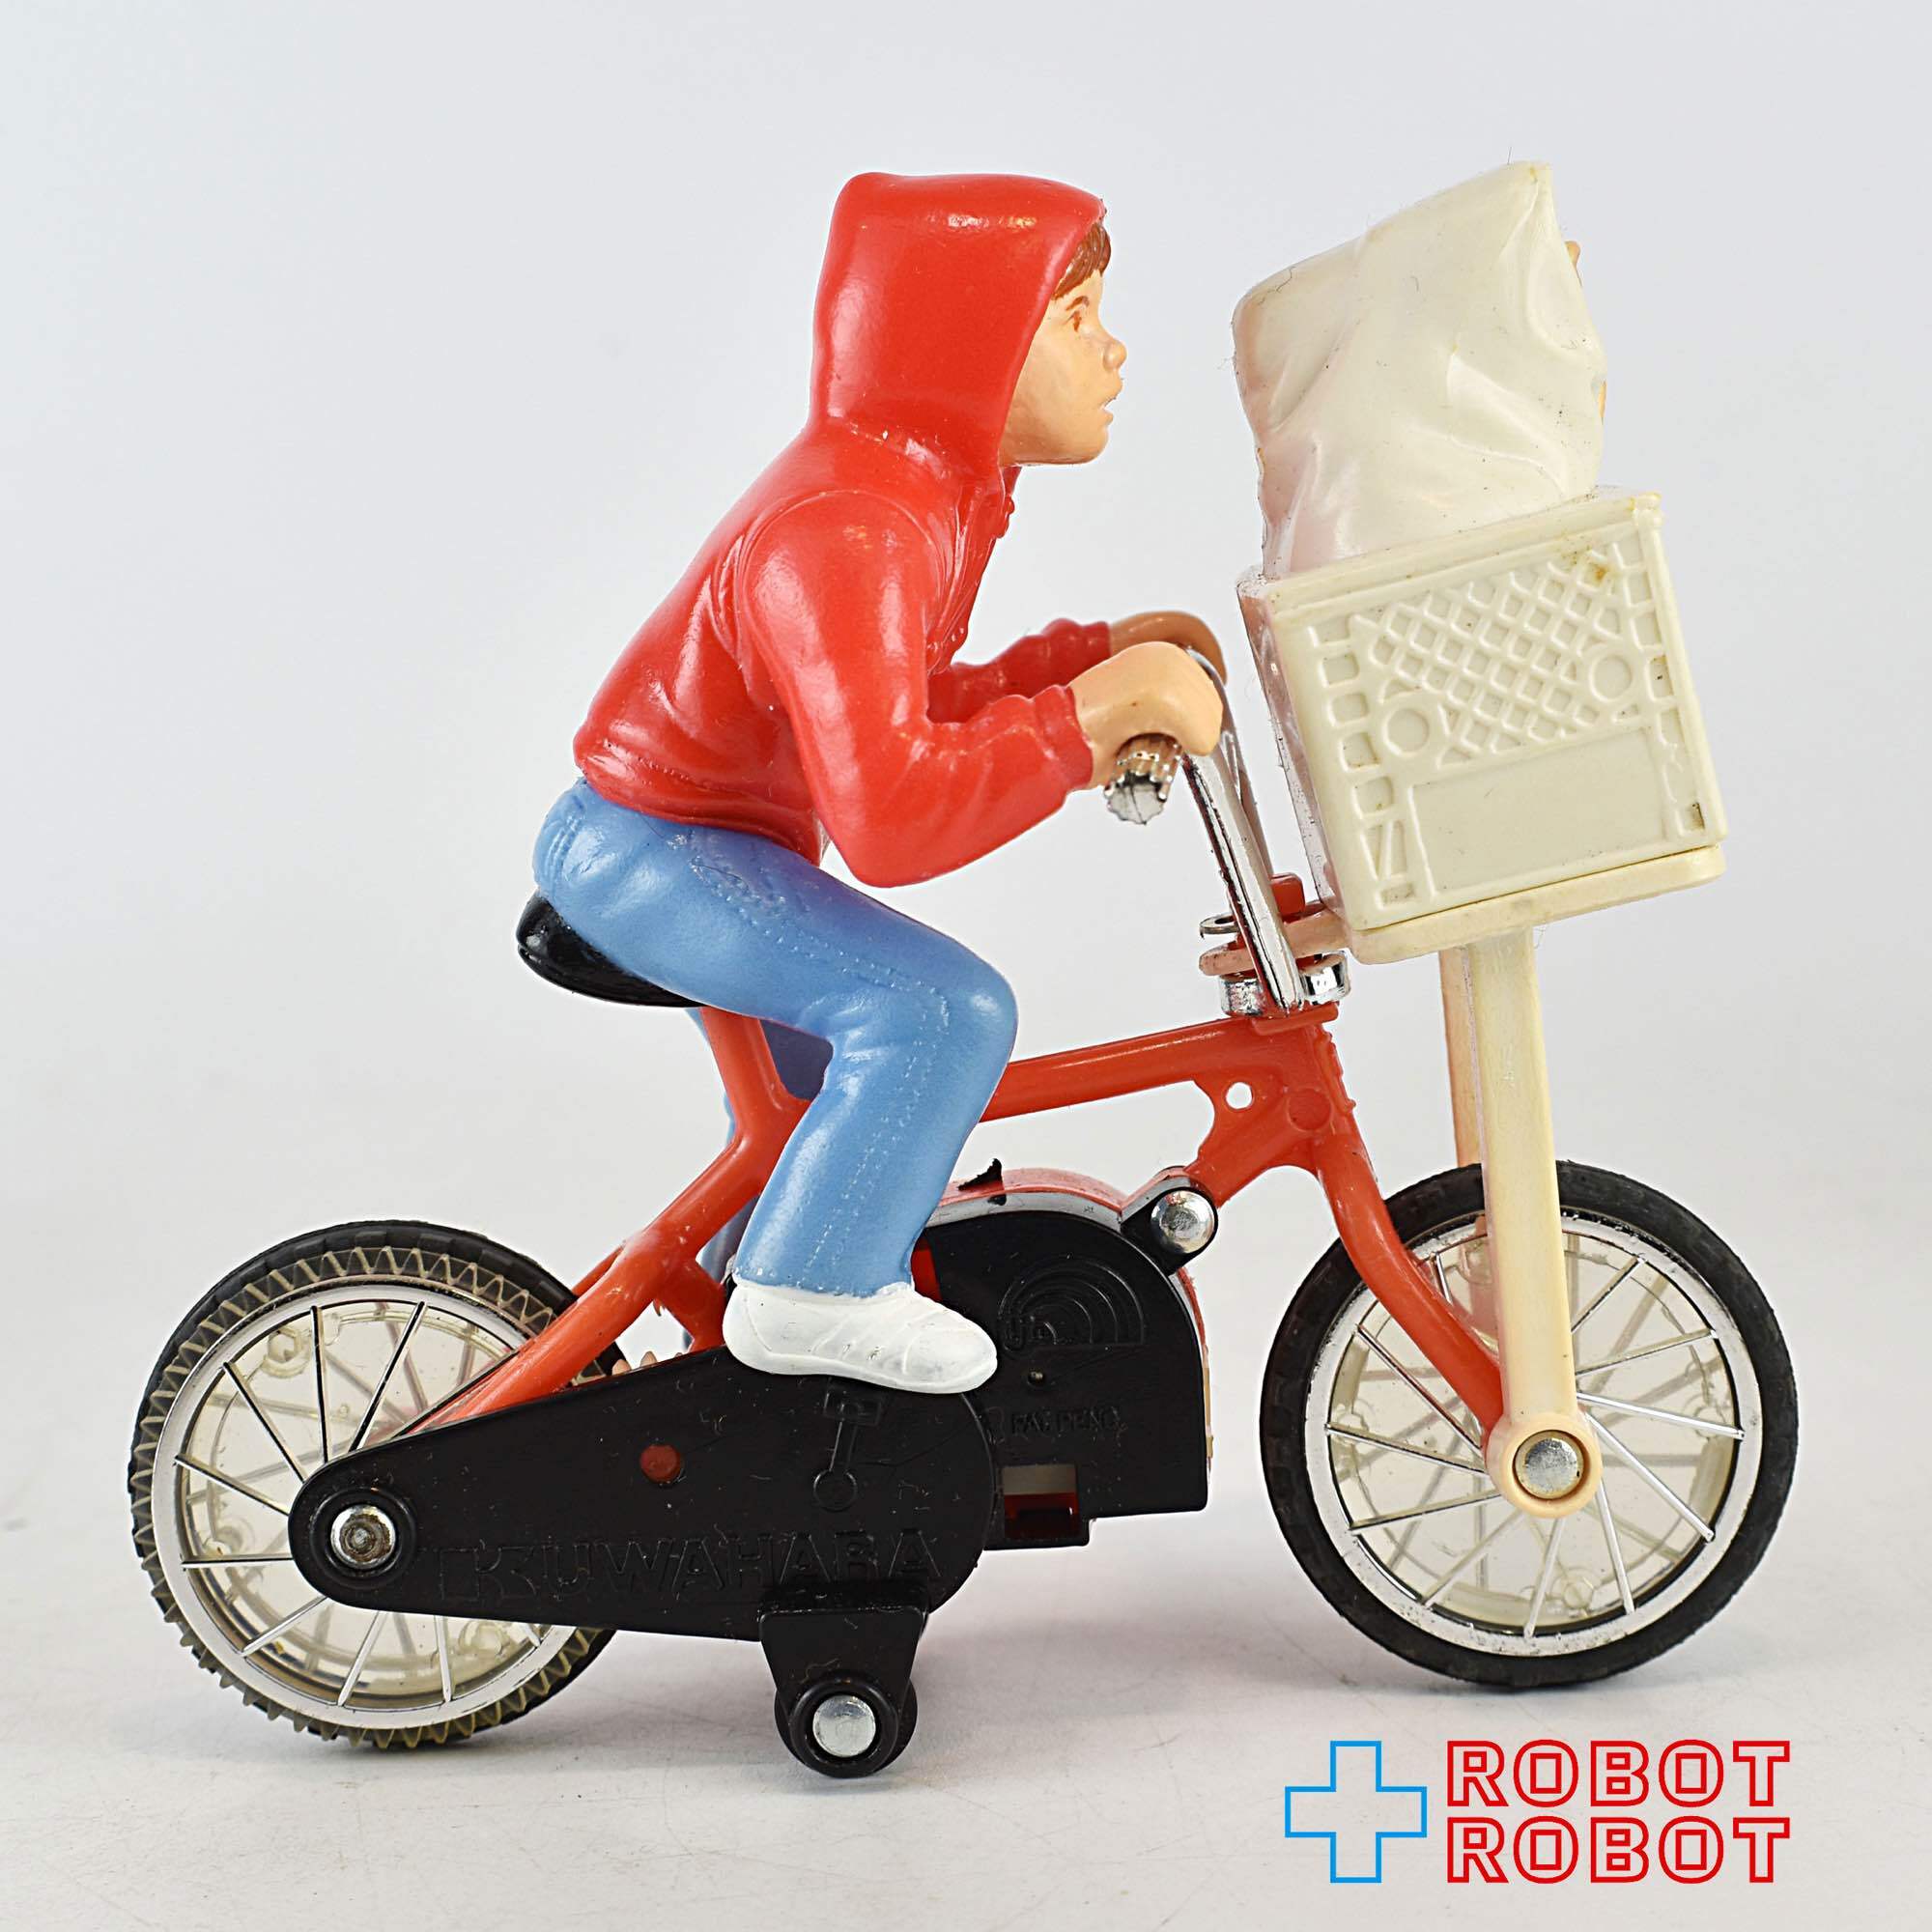 E.T.とエリオットの自転車 フィギュア 開封 – ROBOTROBOT